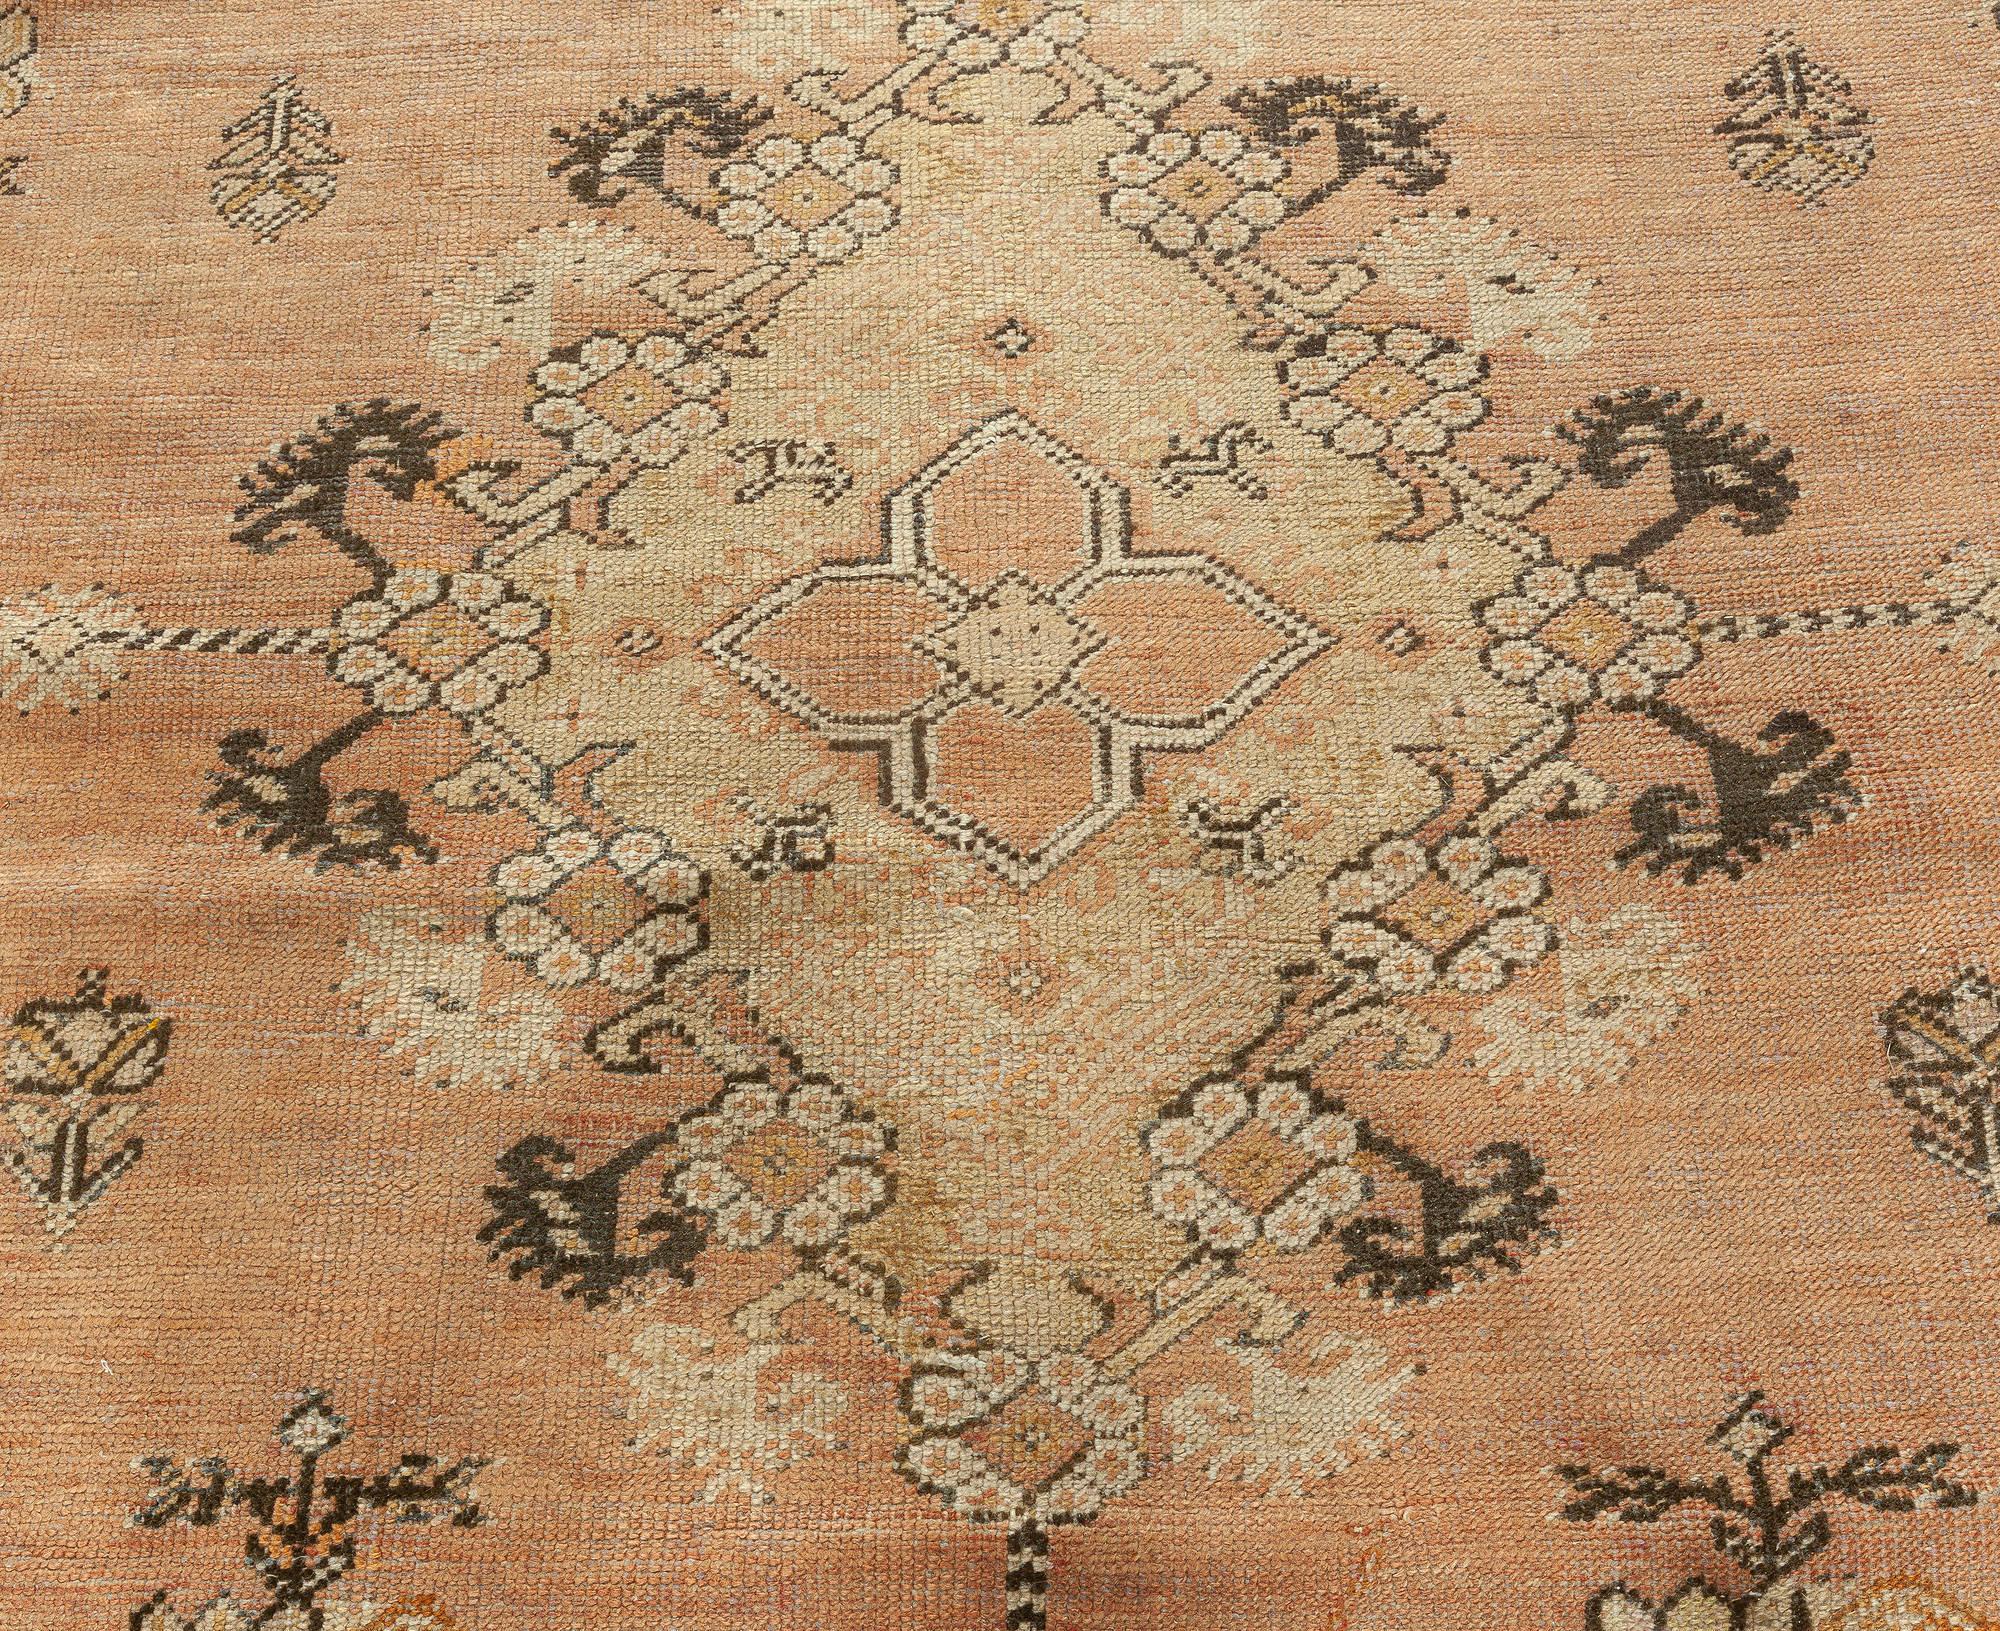 19th century Turkish Ghiordes beige handwoven wool rug
Size: 11'9